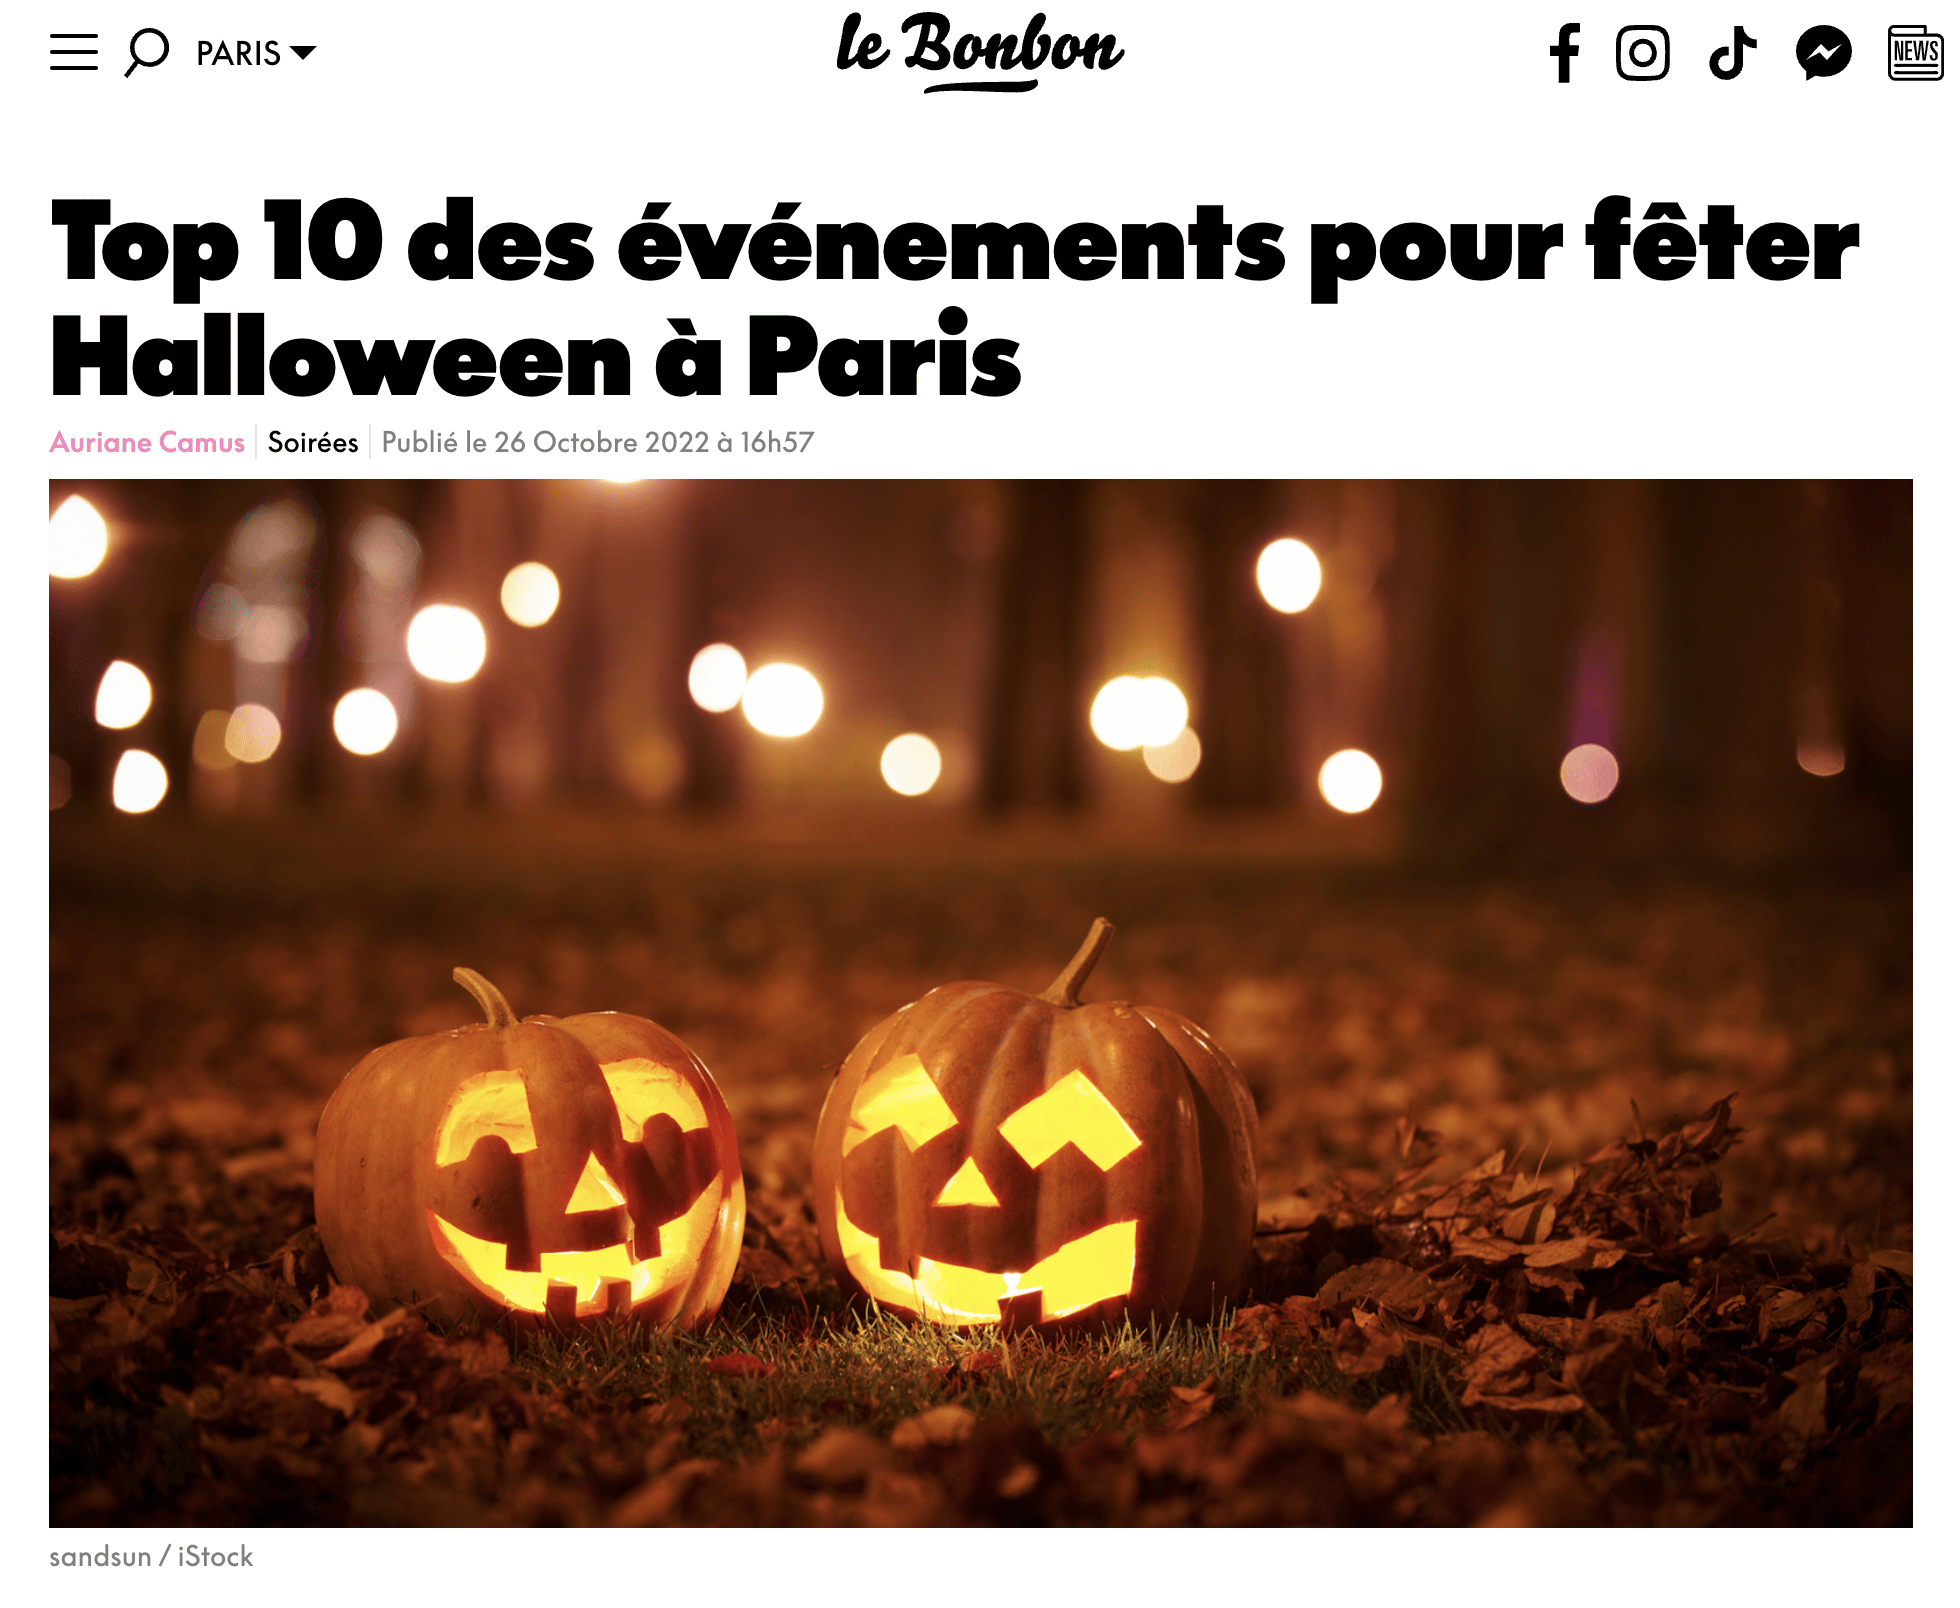 Le Bonbon Top 10 des evenements pour feter Halloween a Paris